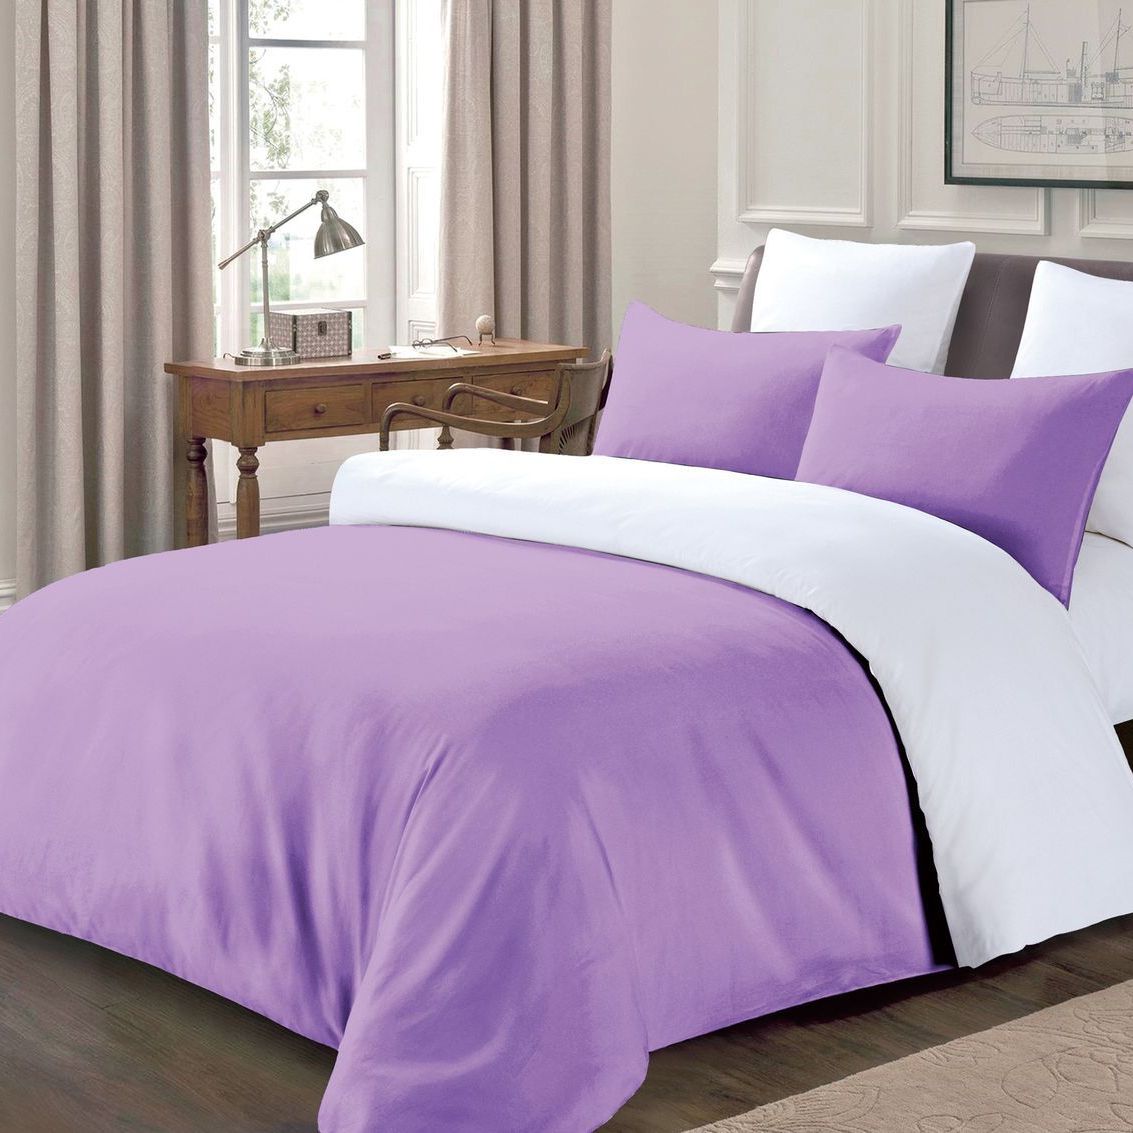 Комплект постельного белья Love You 3/35, полисатин, евростандарт, фиолетовый с белым (56003) - фото 1